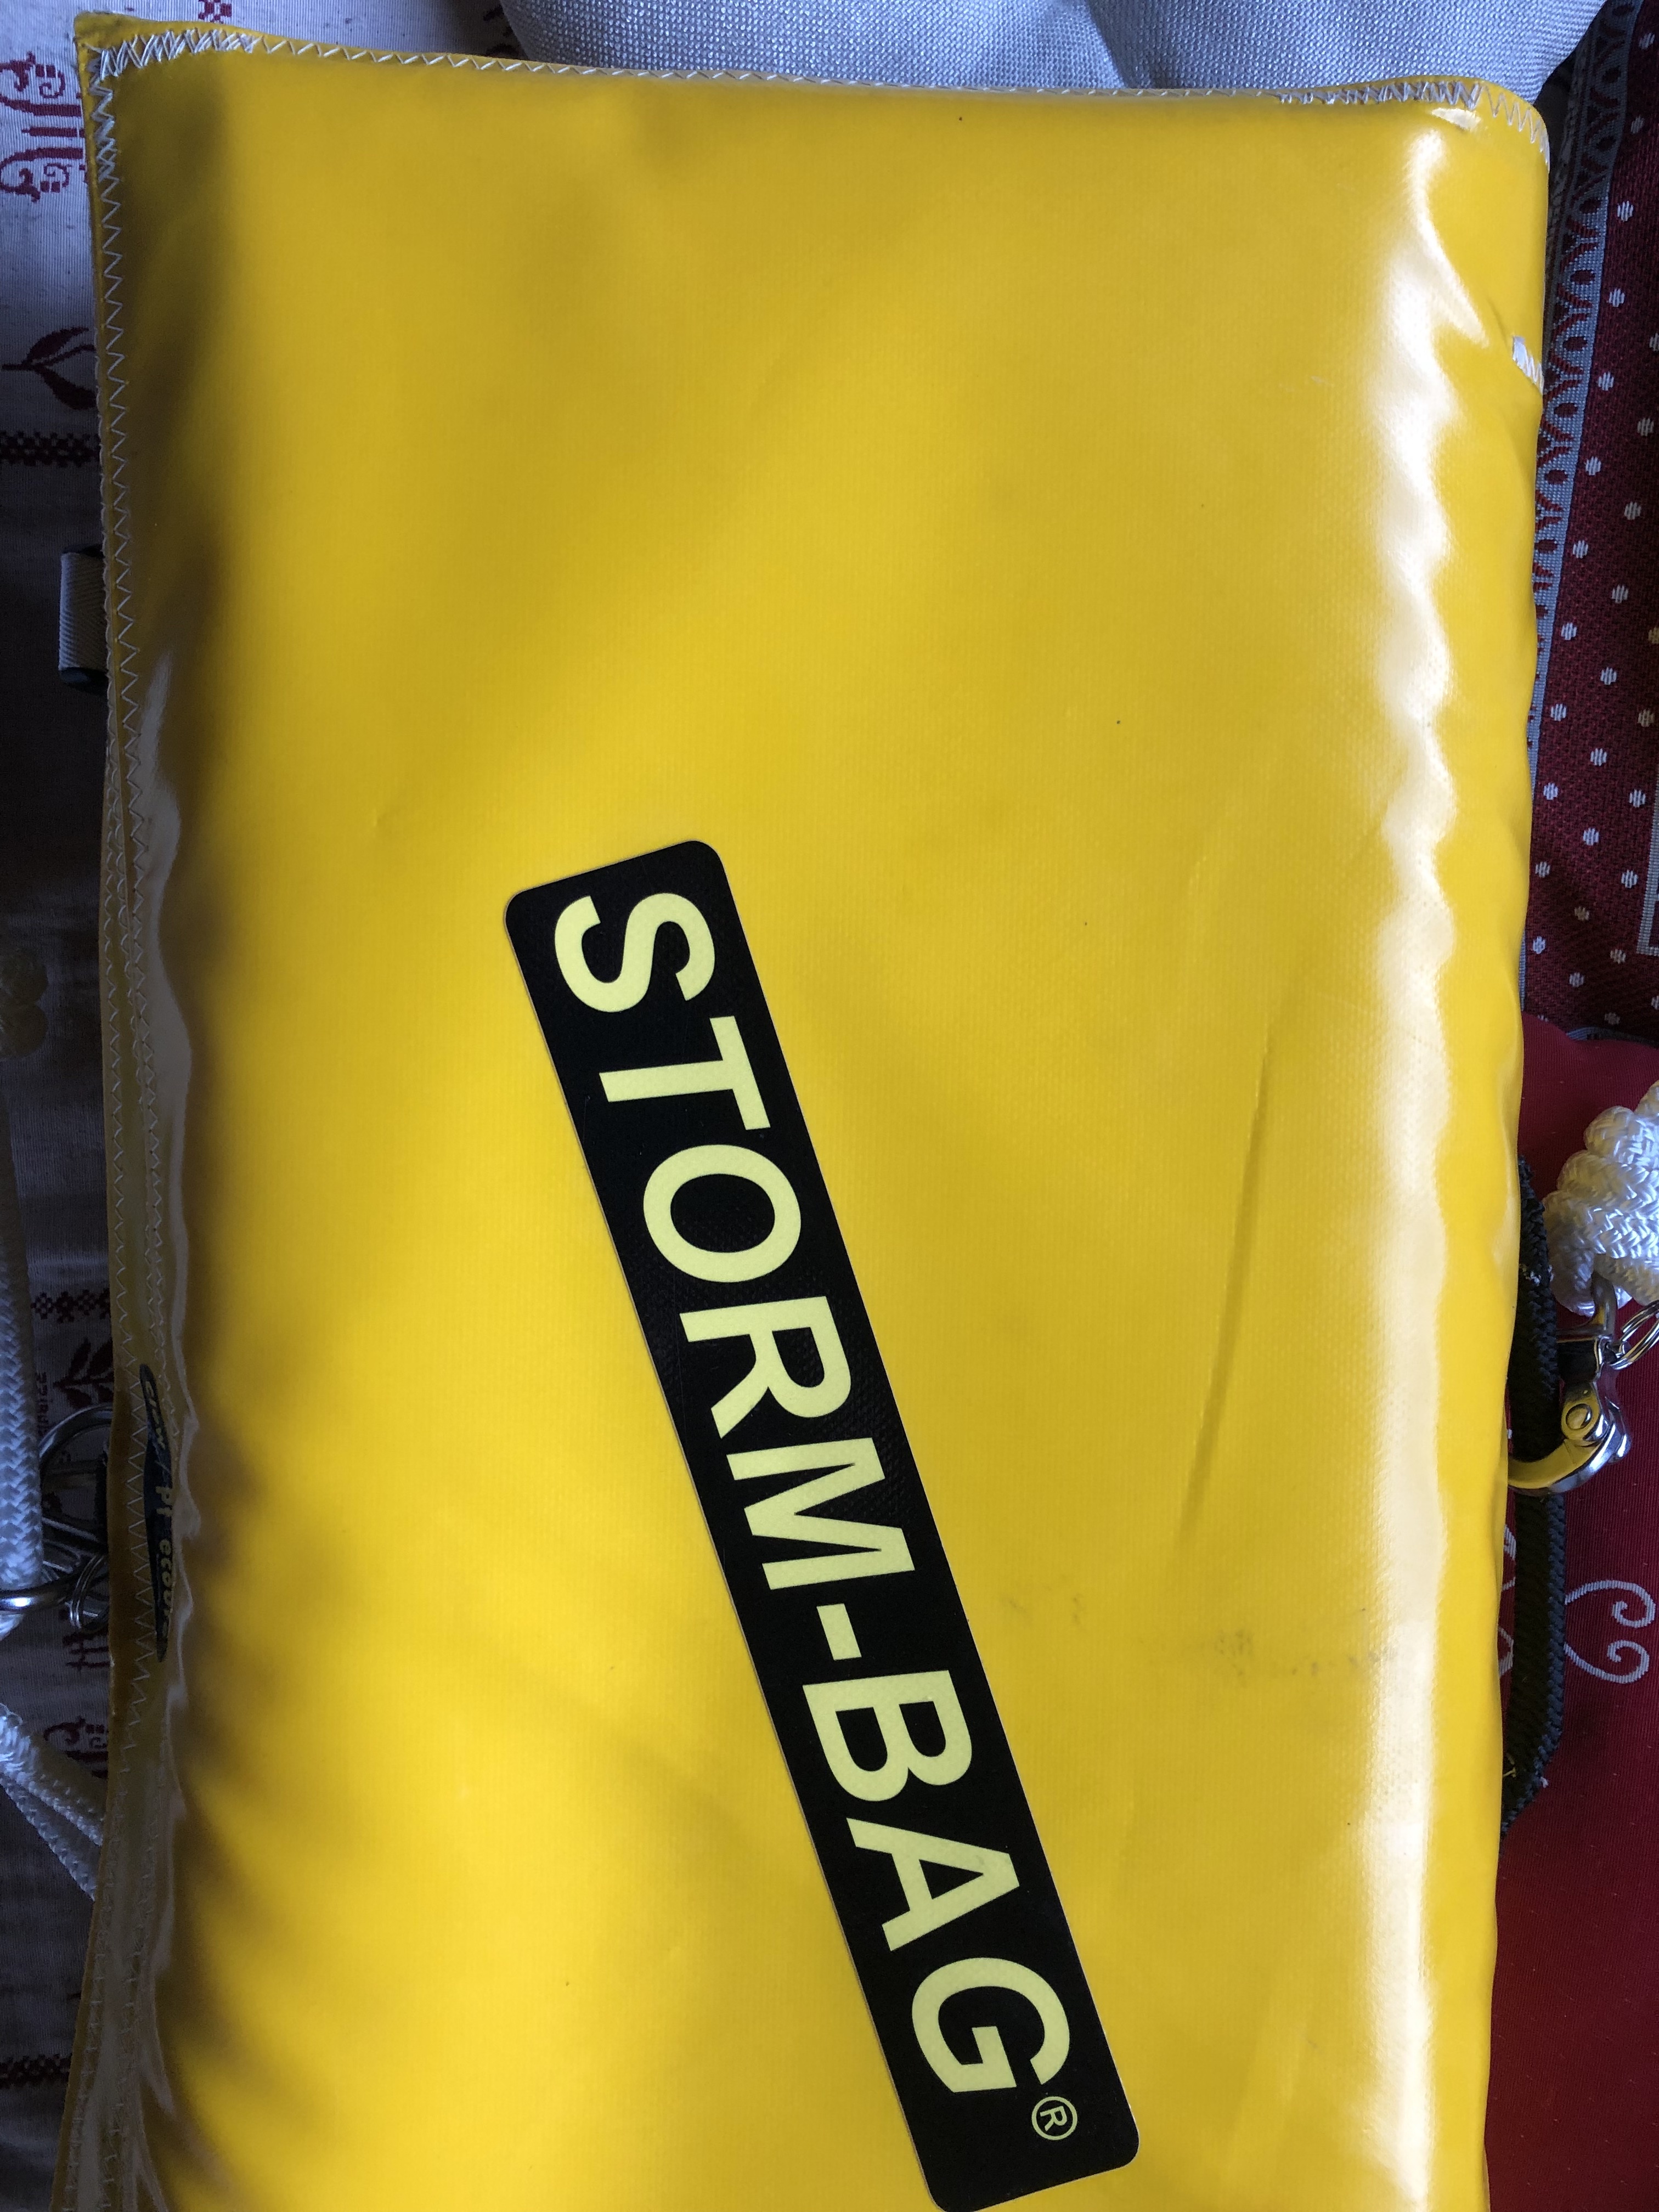 Storm Bag (tourmentin spécial enrouleur)